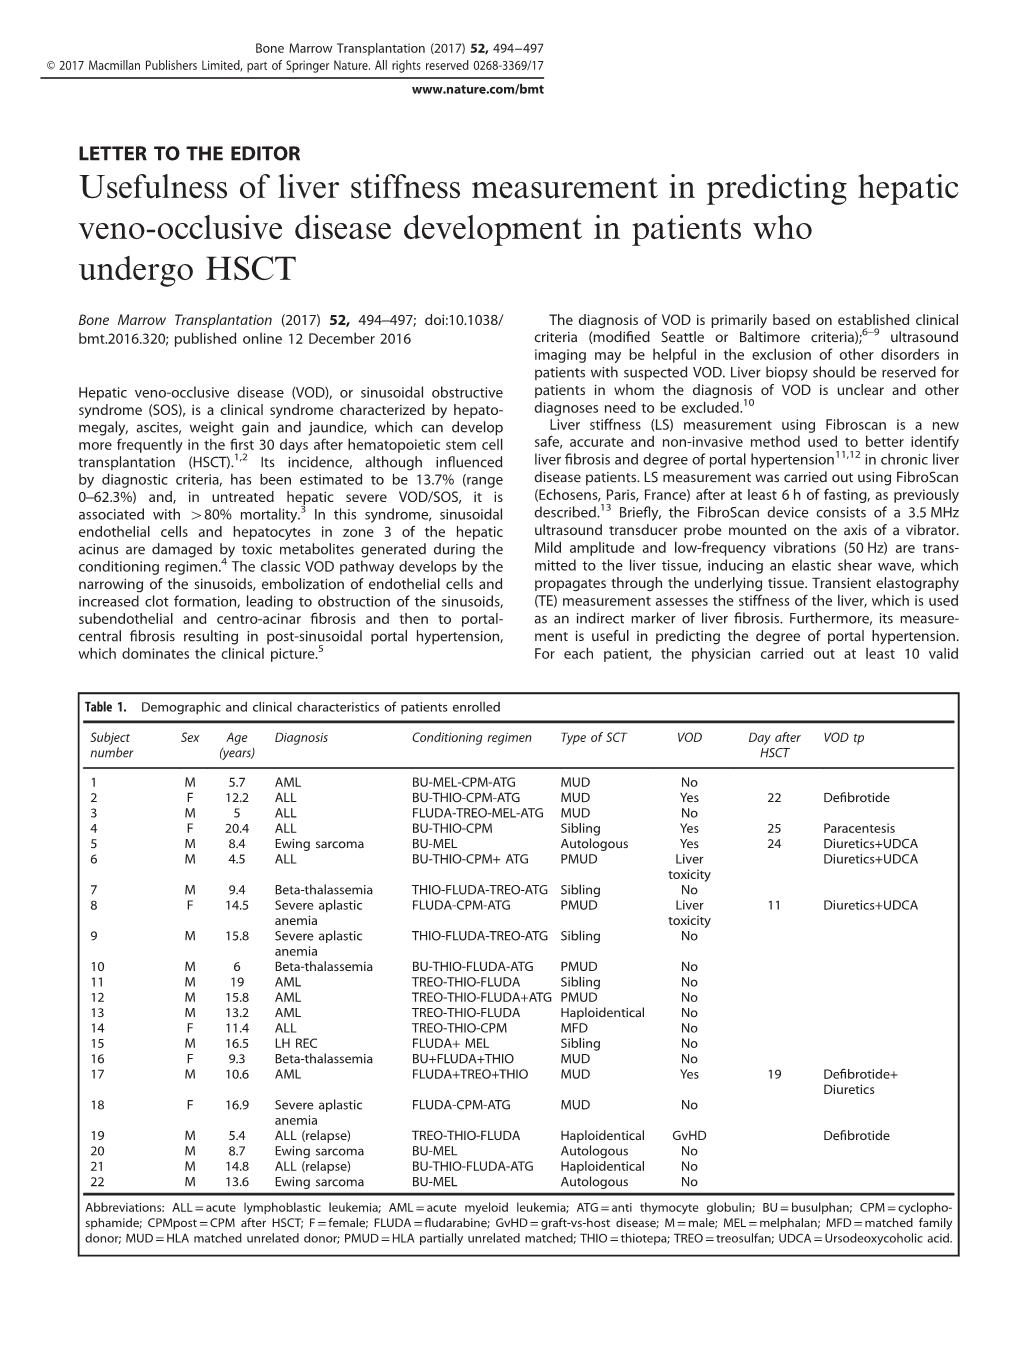 Usefulness of Liver Stiffness Measurement in Predicting Hepatic Veno-Occlusive Disease Development in Patients Who Undergo HSCT